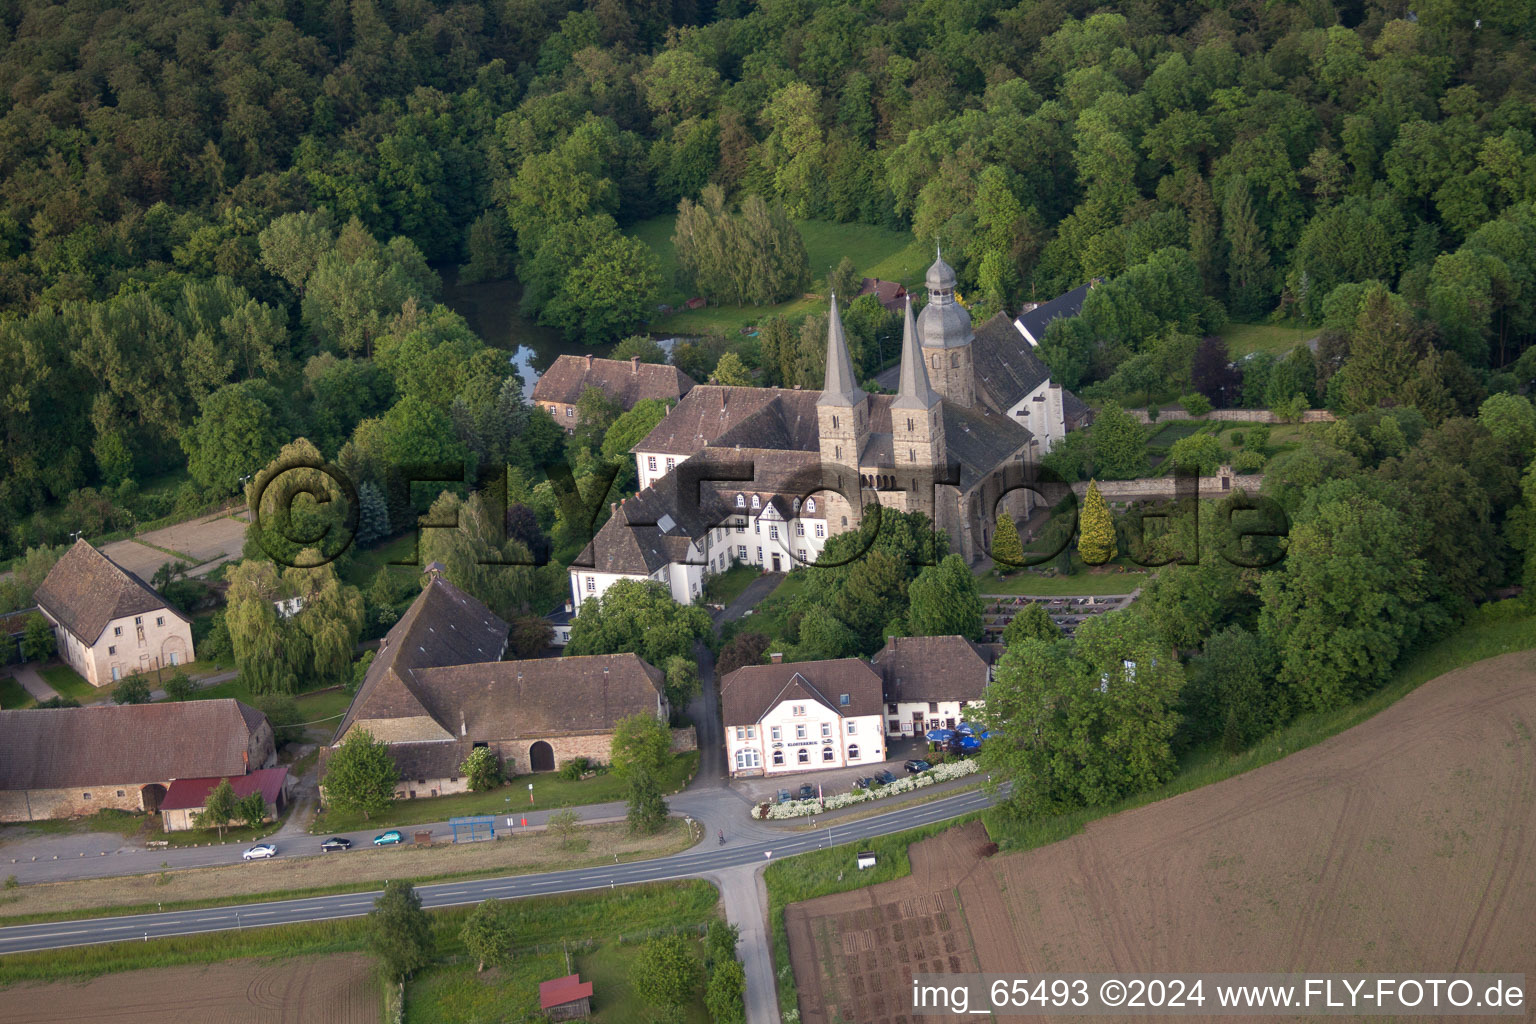 Photographie aérienne de Ensemble immobilier du monastère abbatial Marienmünster à Marienmünster dans le département Rhénanie du Nord-Westphalie, Allemagne